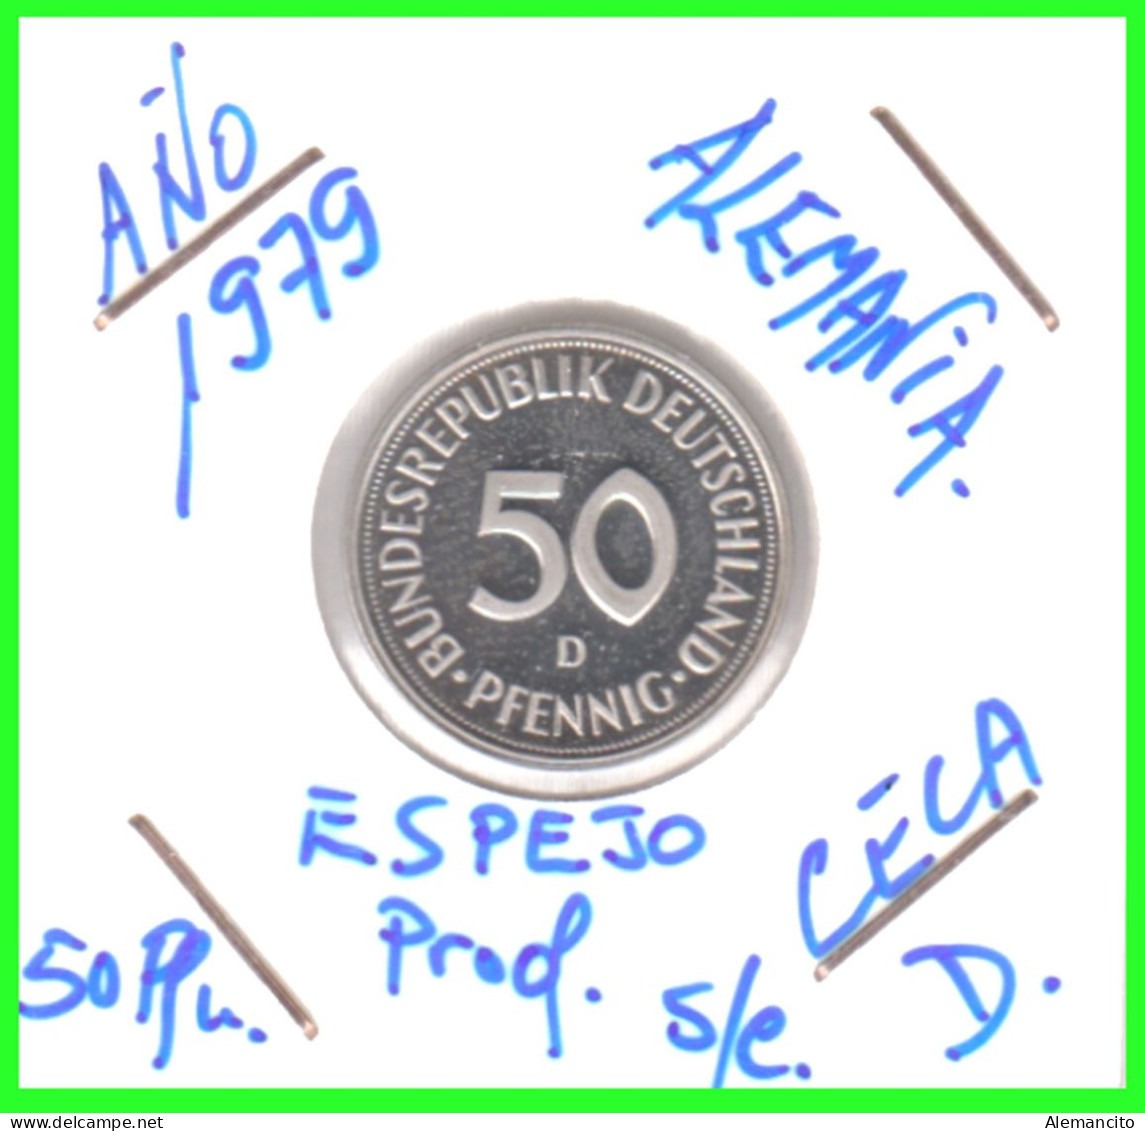 ALEMANIA -DEUTSCHLAND - GERMANY-MONEDA DE LA REPUBLICA FEDERAL DE ALEMANIA DE 50 Pfn. - DEL AÑO 1979 CECA - D - MUNICH - 50 Pfennig